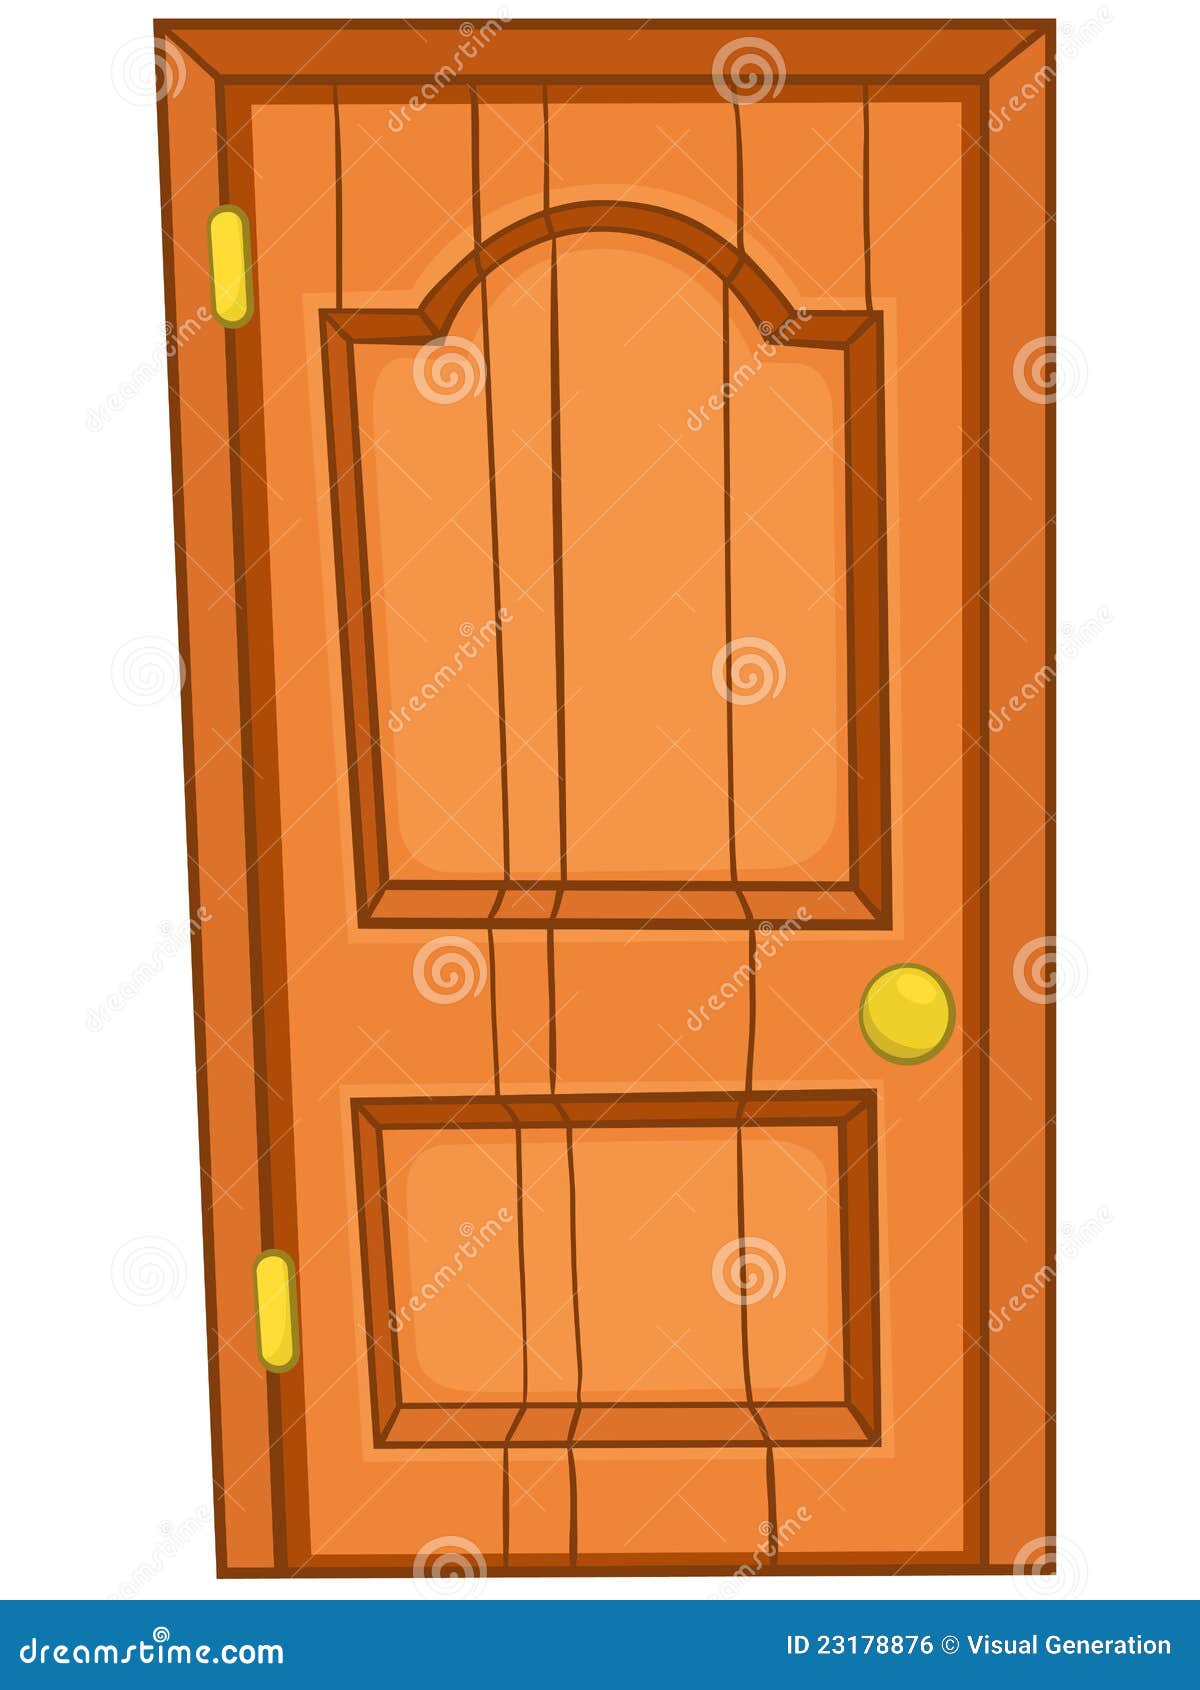 Cartoon Home Door stock vector. Illustration of indoors 